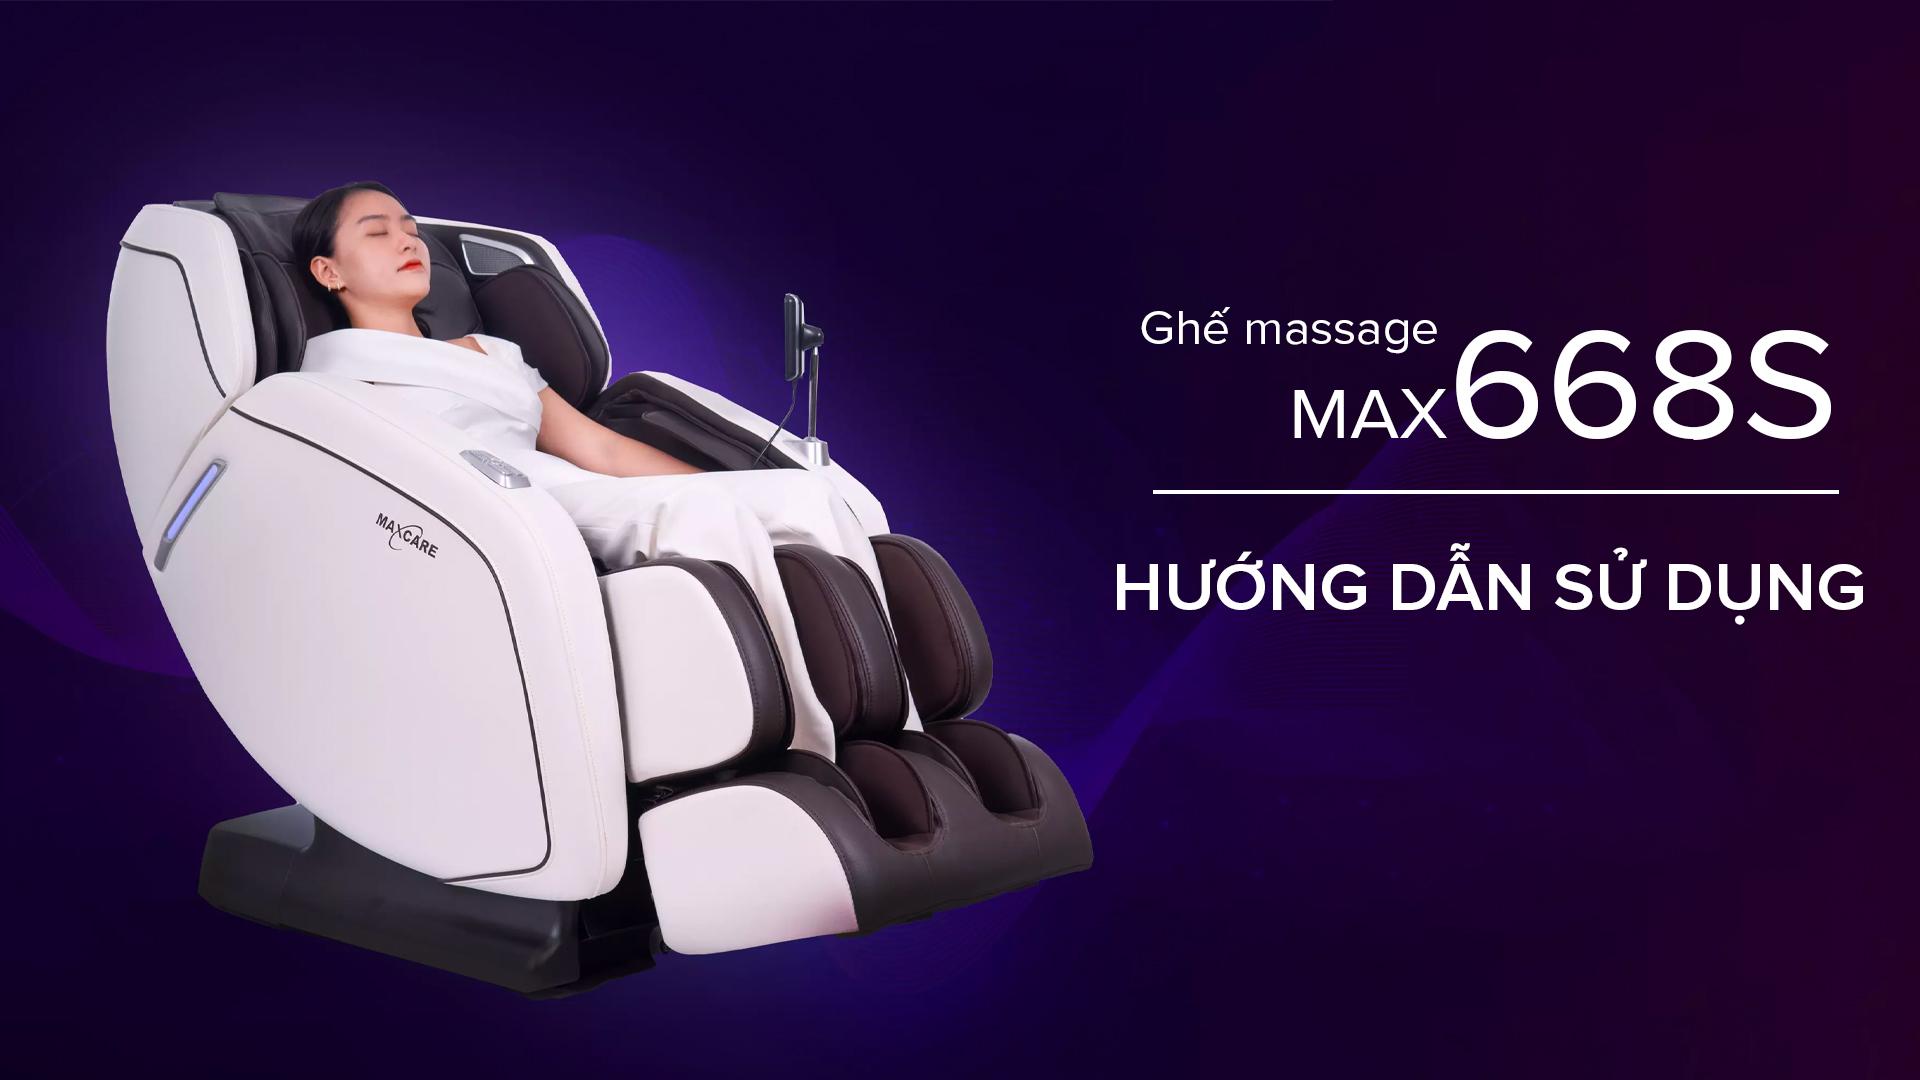 Hướng dẫn sử dụng ghế massage toàn thân Maxcare Max668S